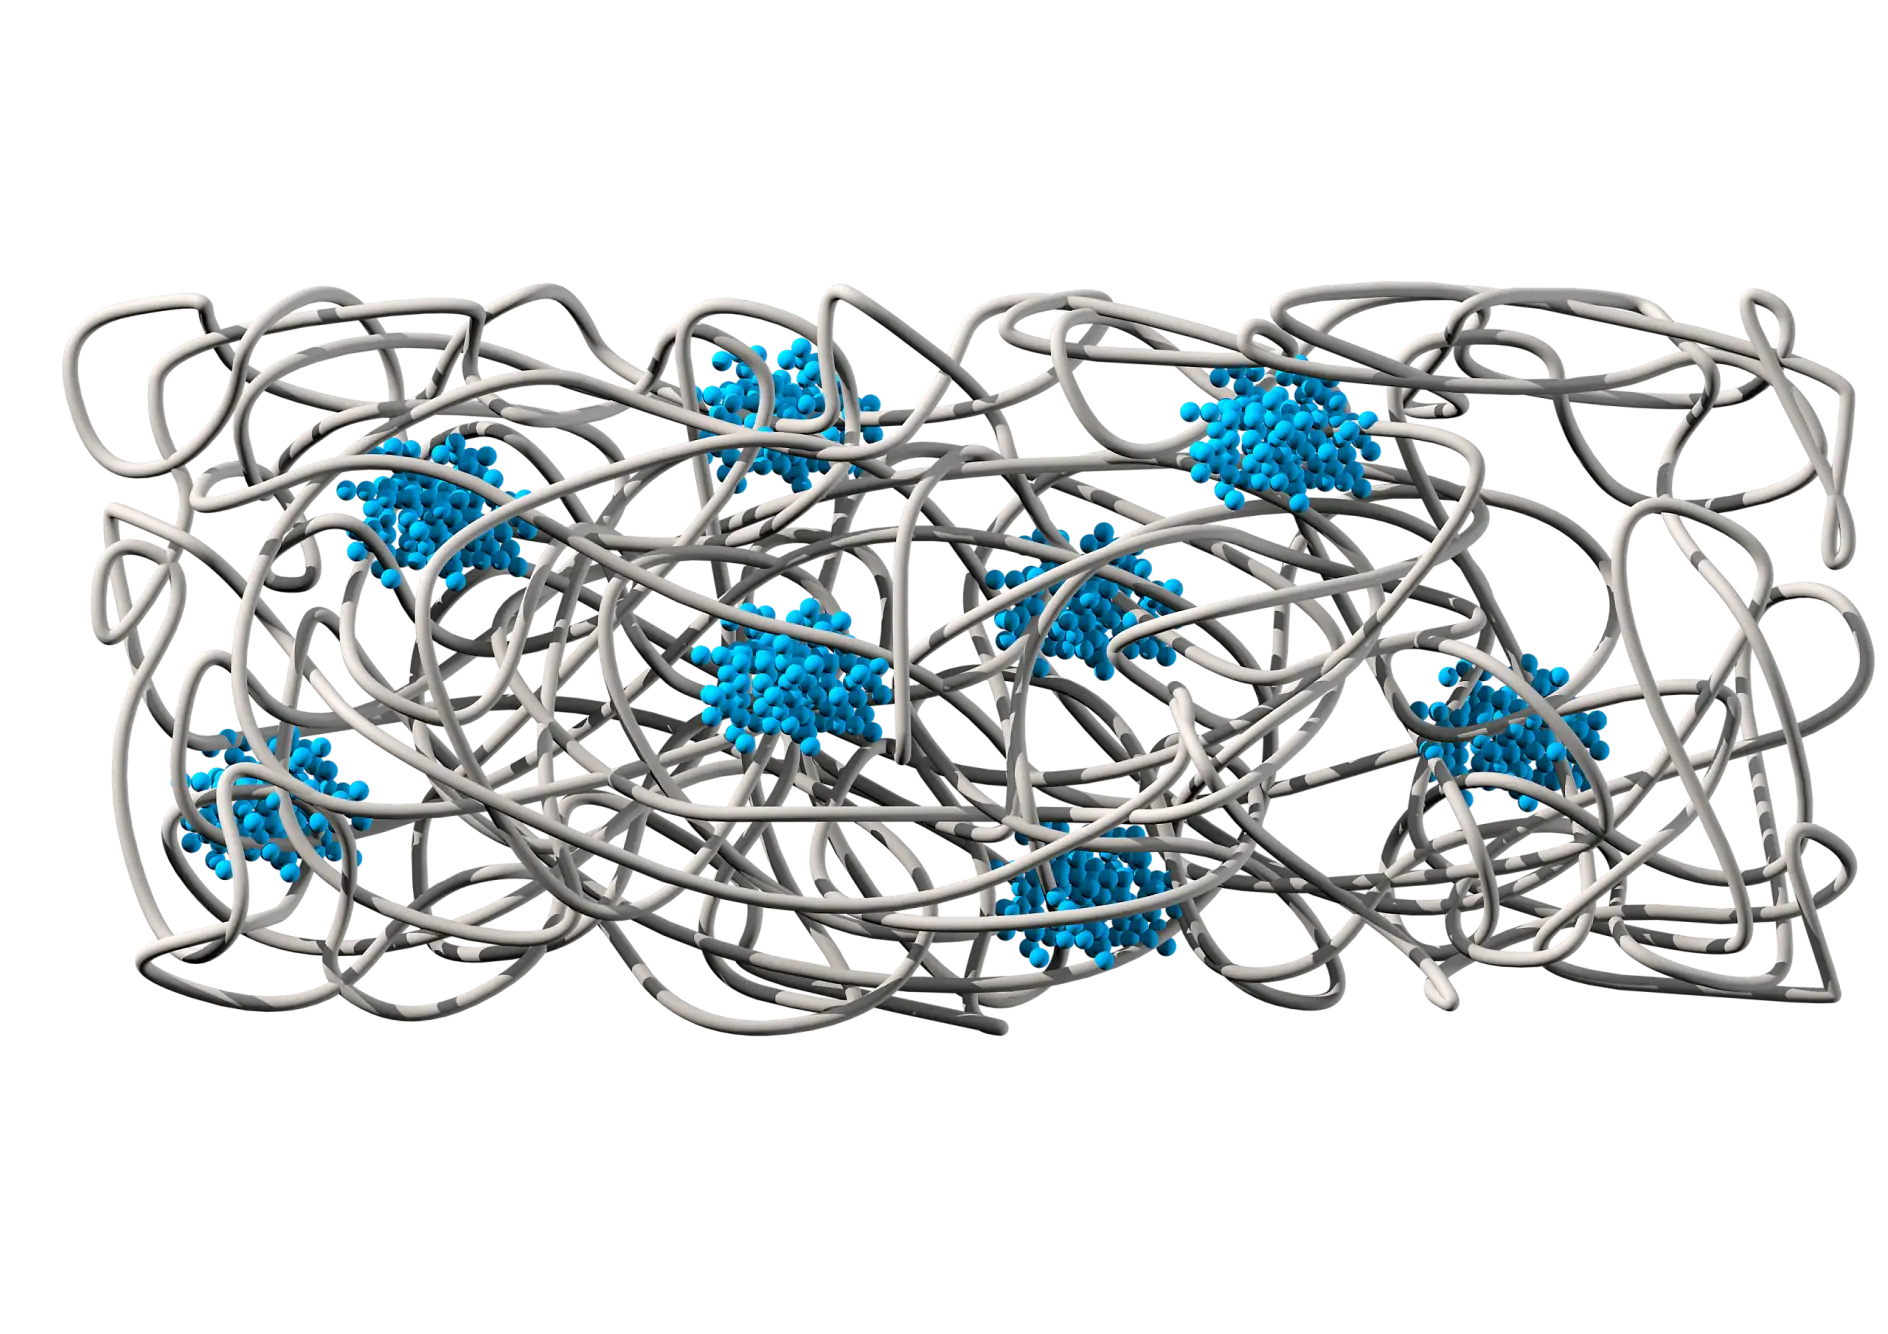 La struttura chimica presenta una matrice della gomma (grigia) che fornisce adesione ed elasticità. I domini del polisterene (blu) forniscono una coesione supplementare e resistenza allo strappo.